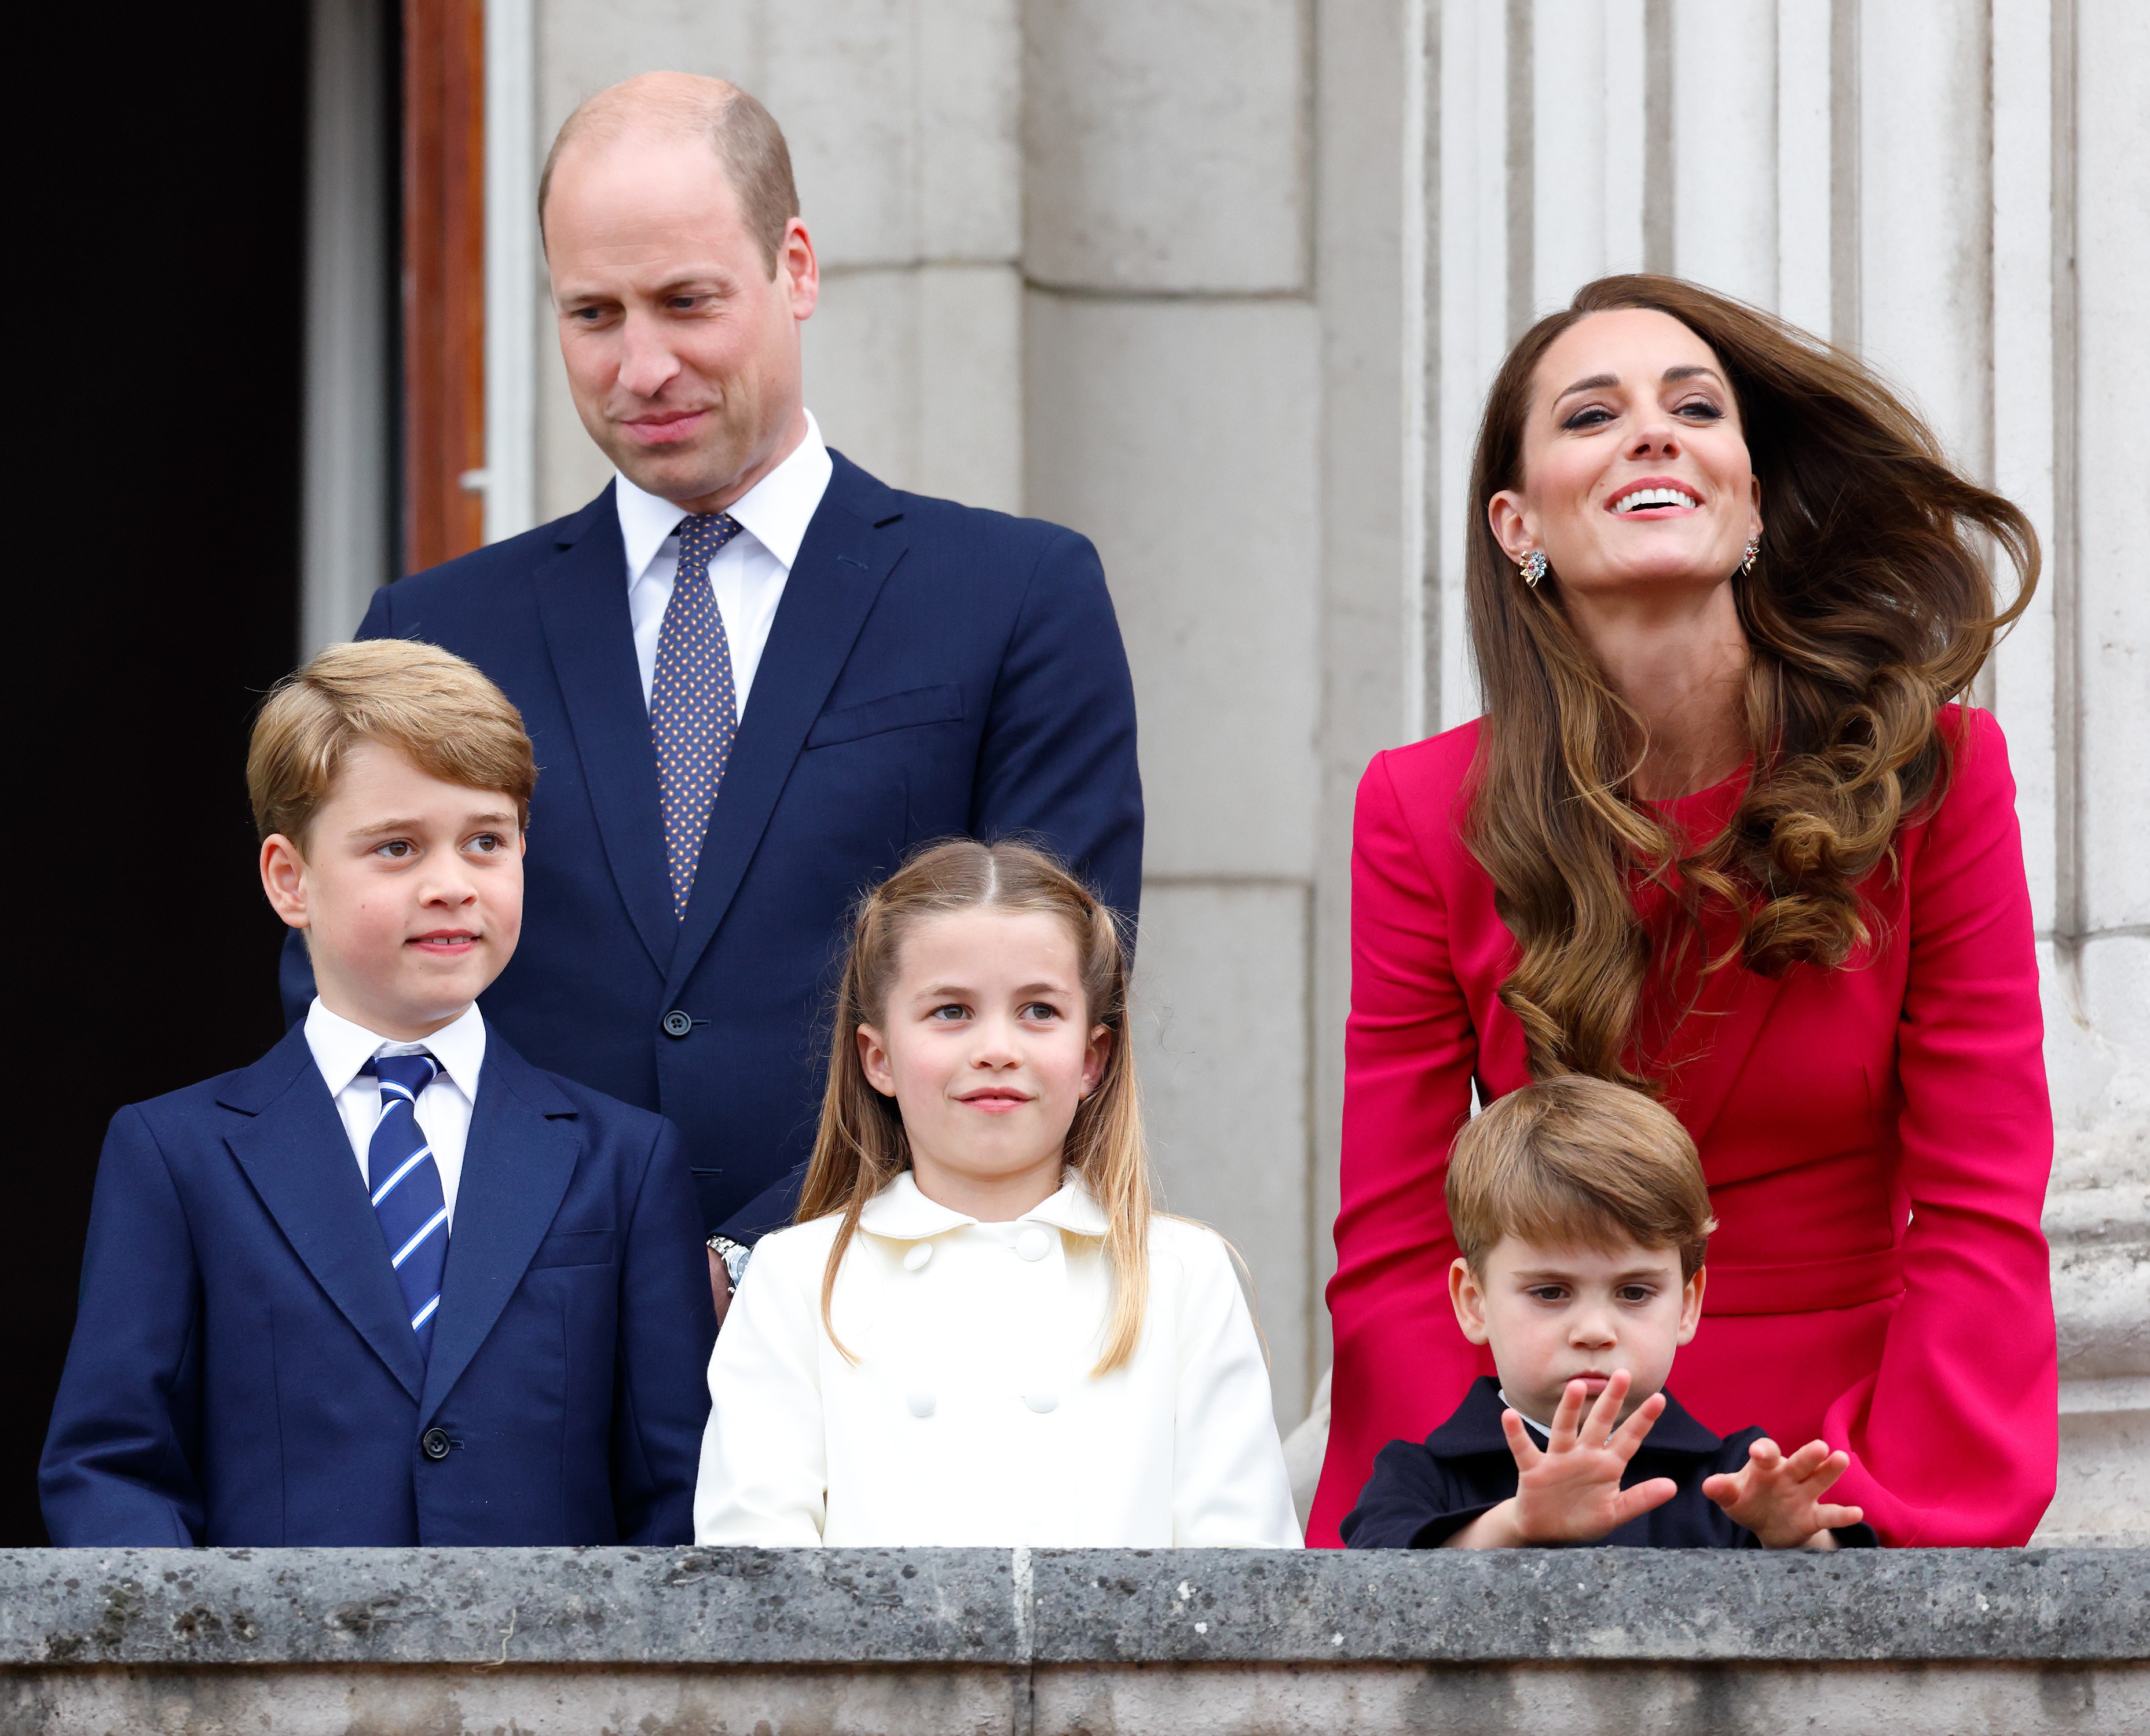 O Príncipe William e a Duquesa Kate Middleton, com os três filhos, durante um dos eventos do Jubileu de Platina da Rainha Elizabeth II (Foto: Getty Images)